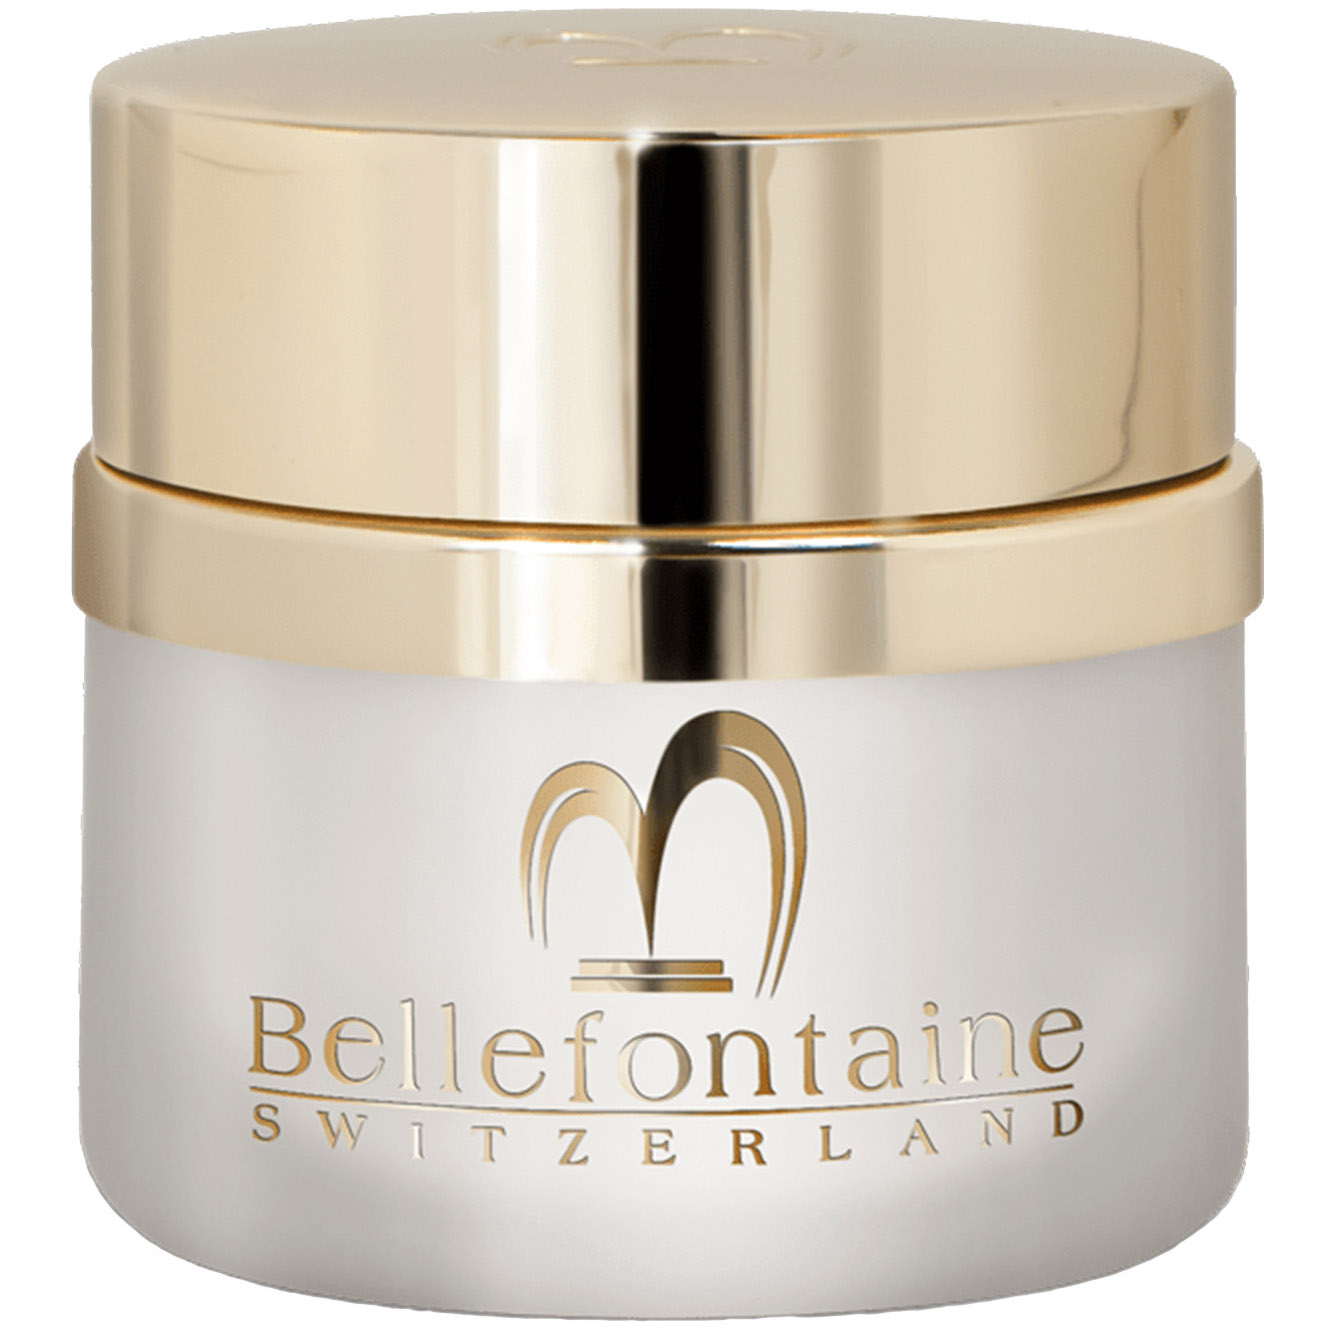 Ночной крем для лица Bellefontaine Питание и регенерация, 50 мл - фото 1